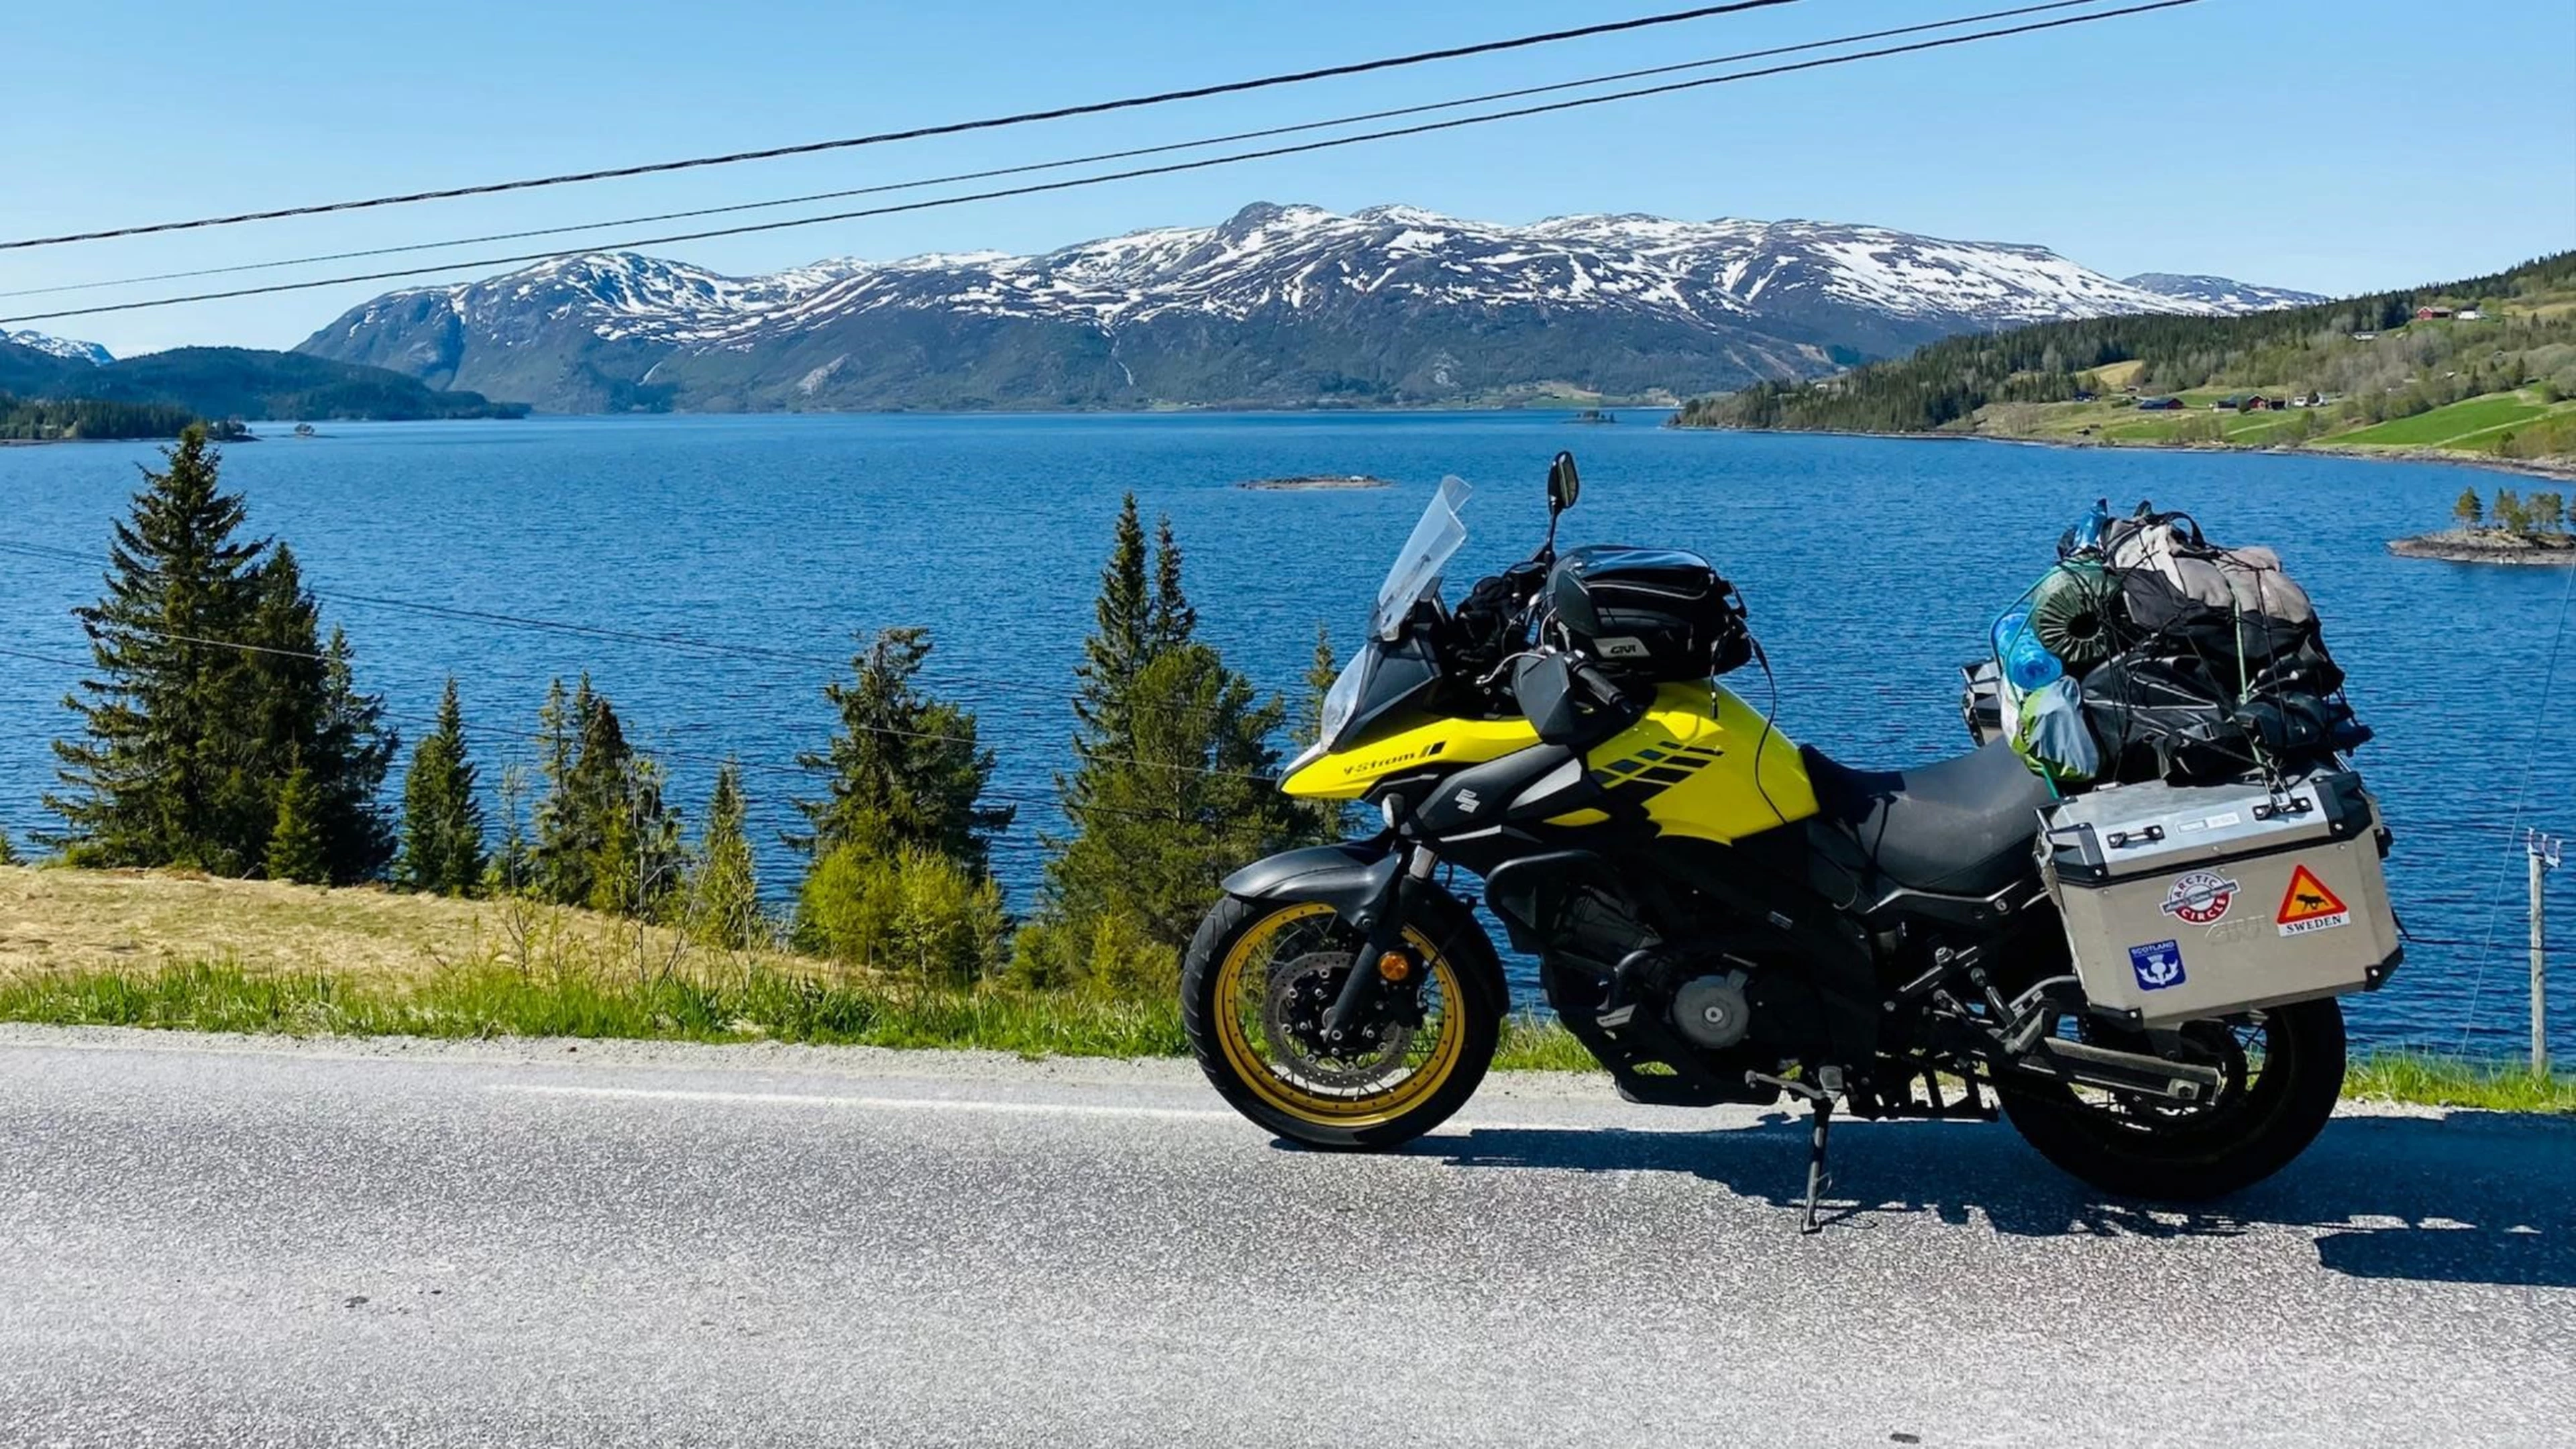 Suzuki Adventure Motorcycle Near Mountains